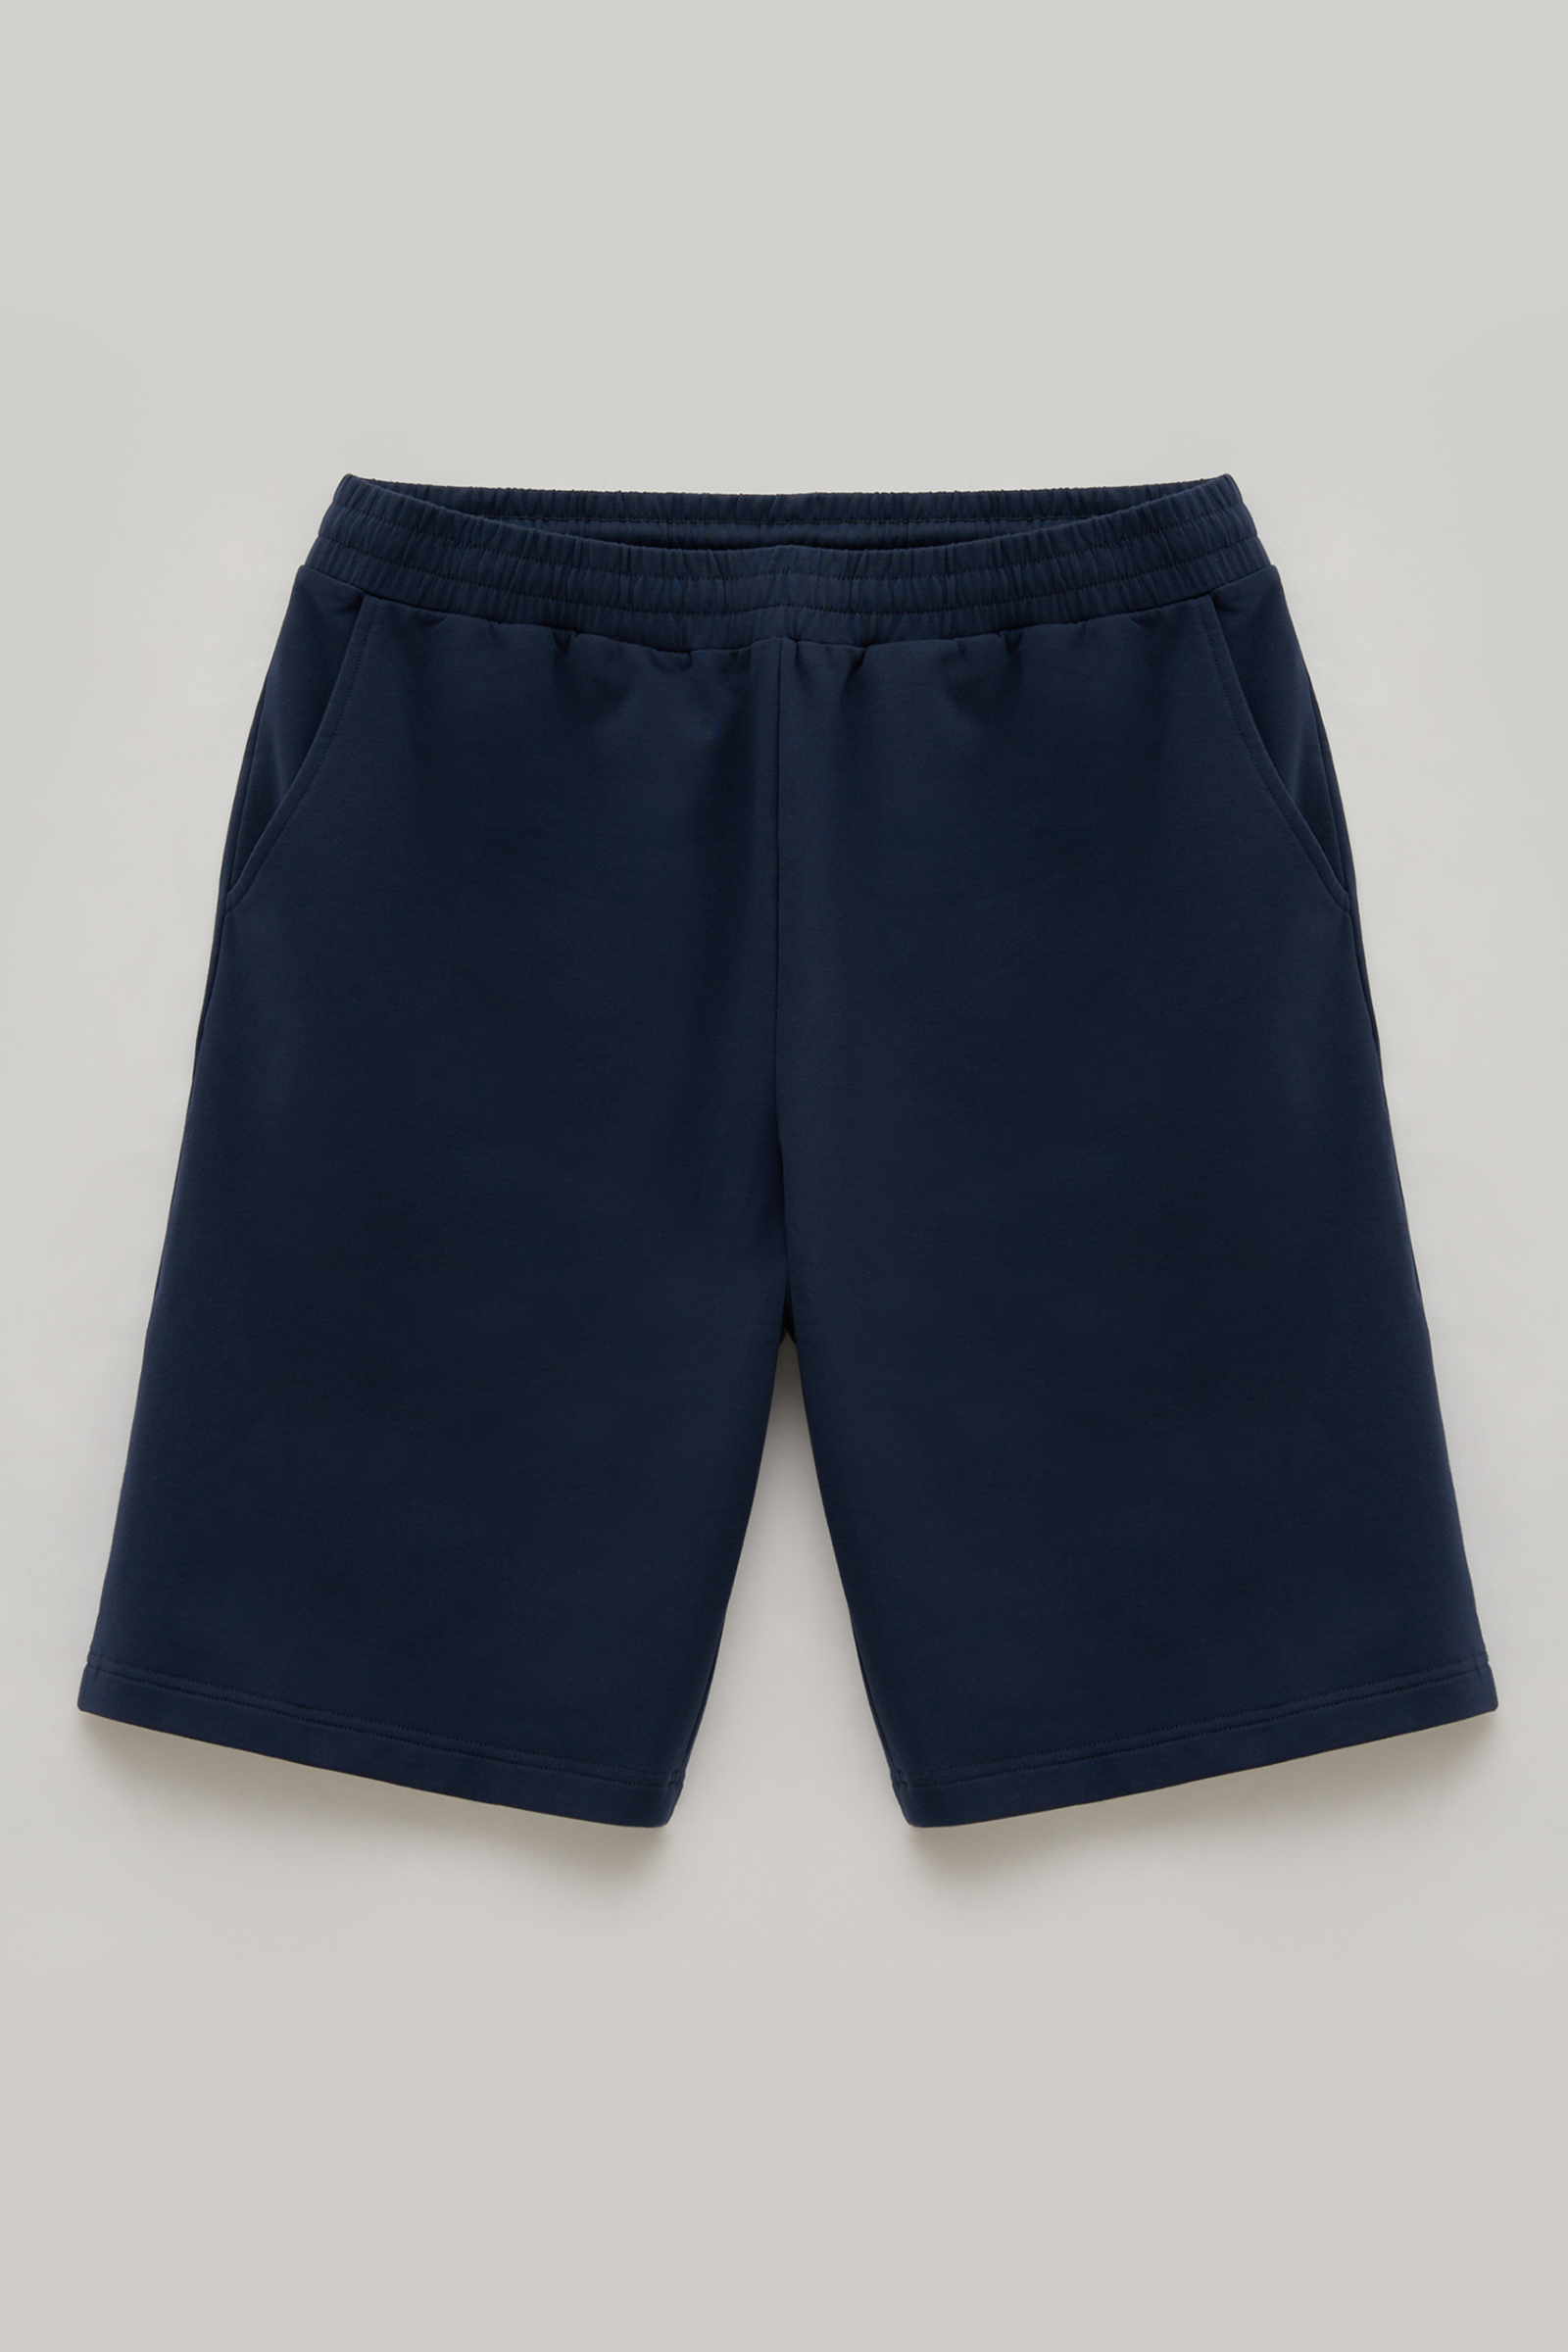 Повседневные шорты мужские Finn Flare FSE21033 синие L